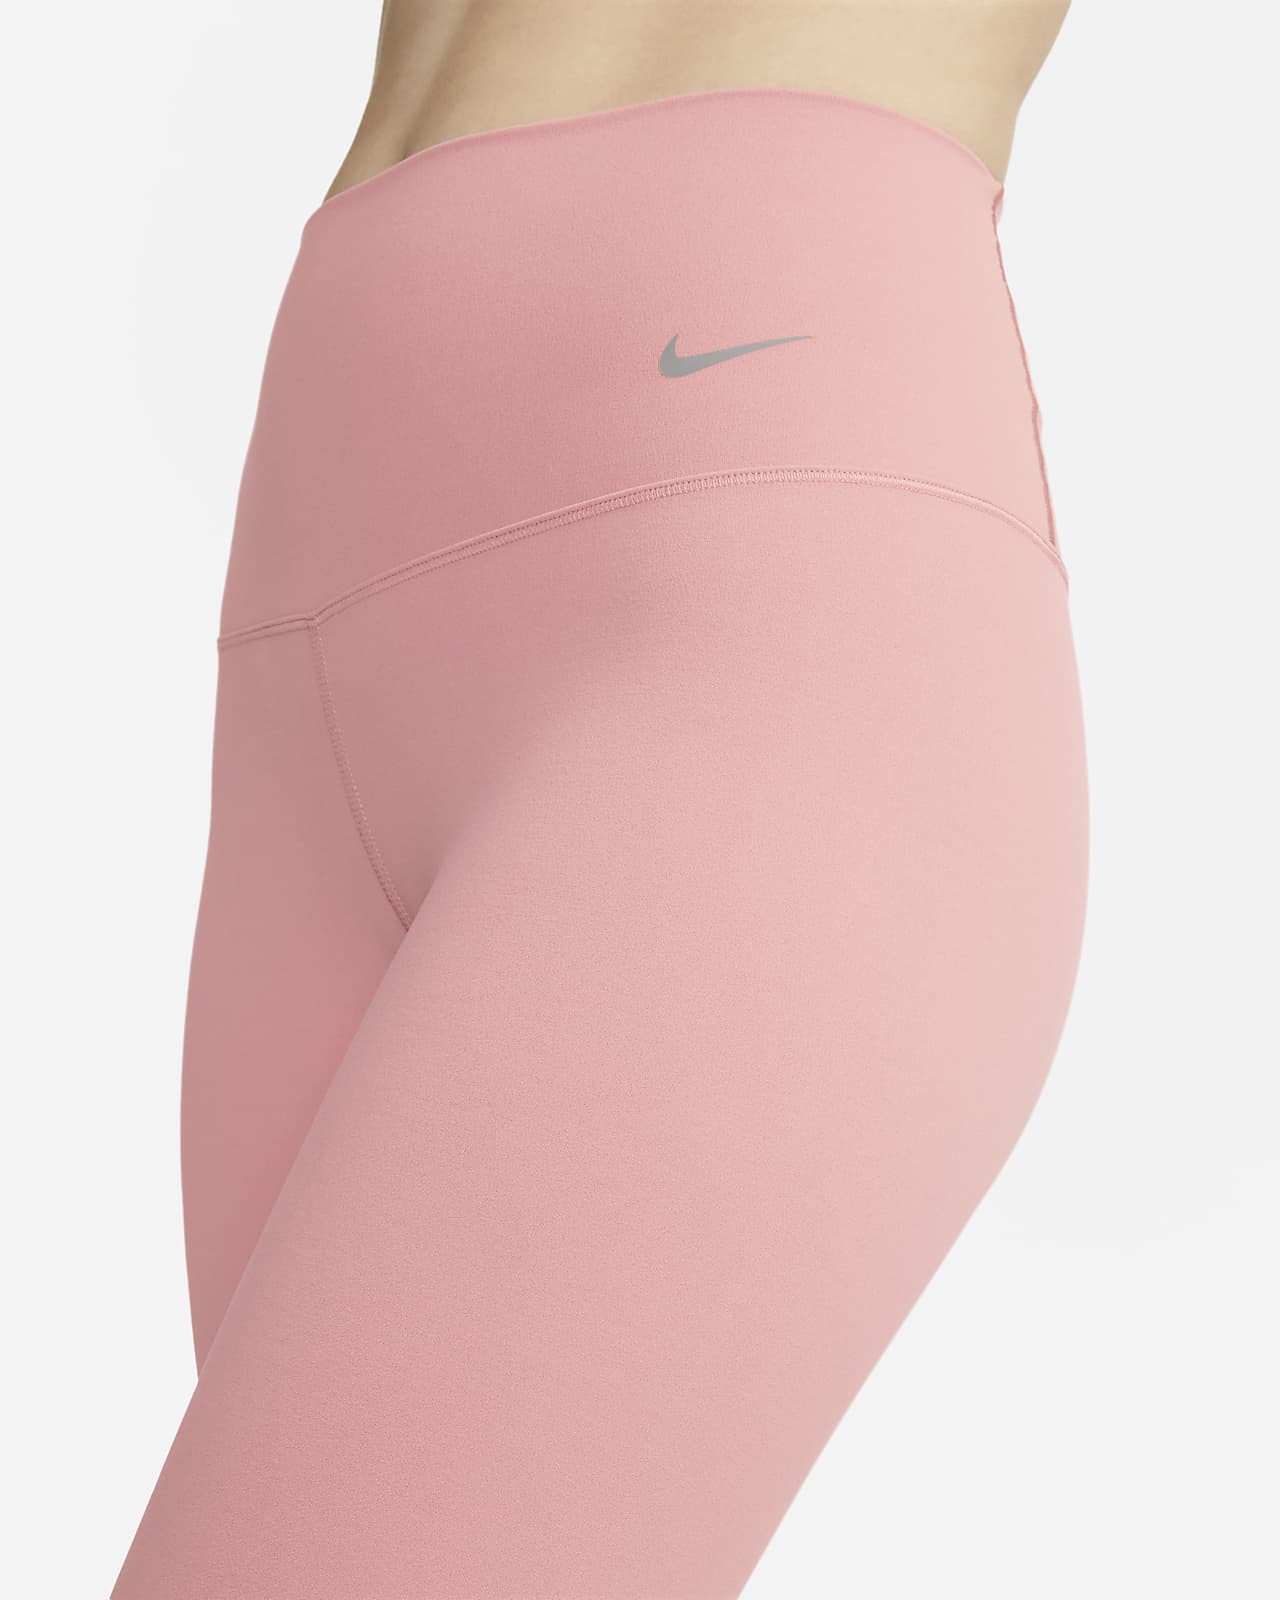 Leggings con paneles de malla de tiro alto de 7/8 para mujer Nike